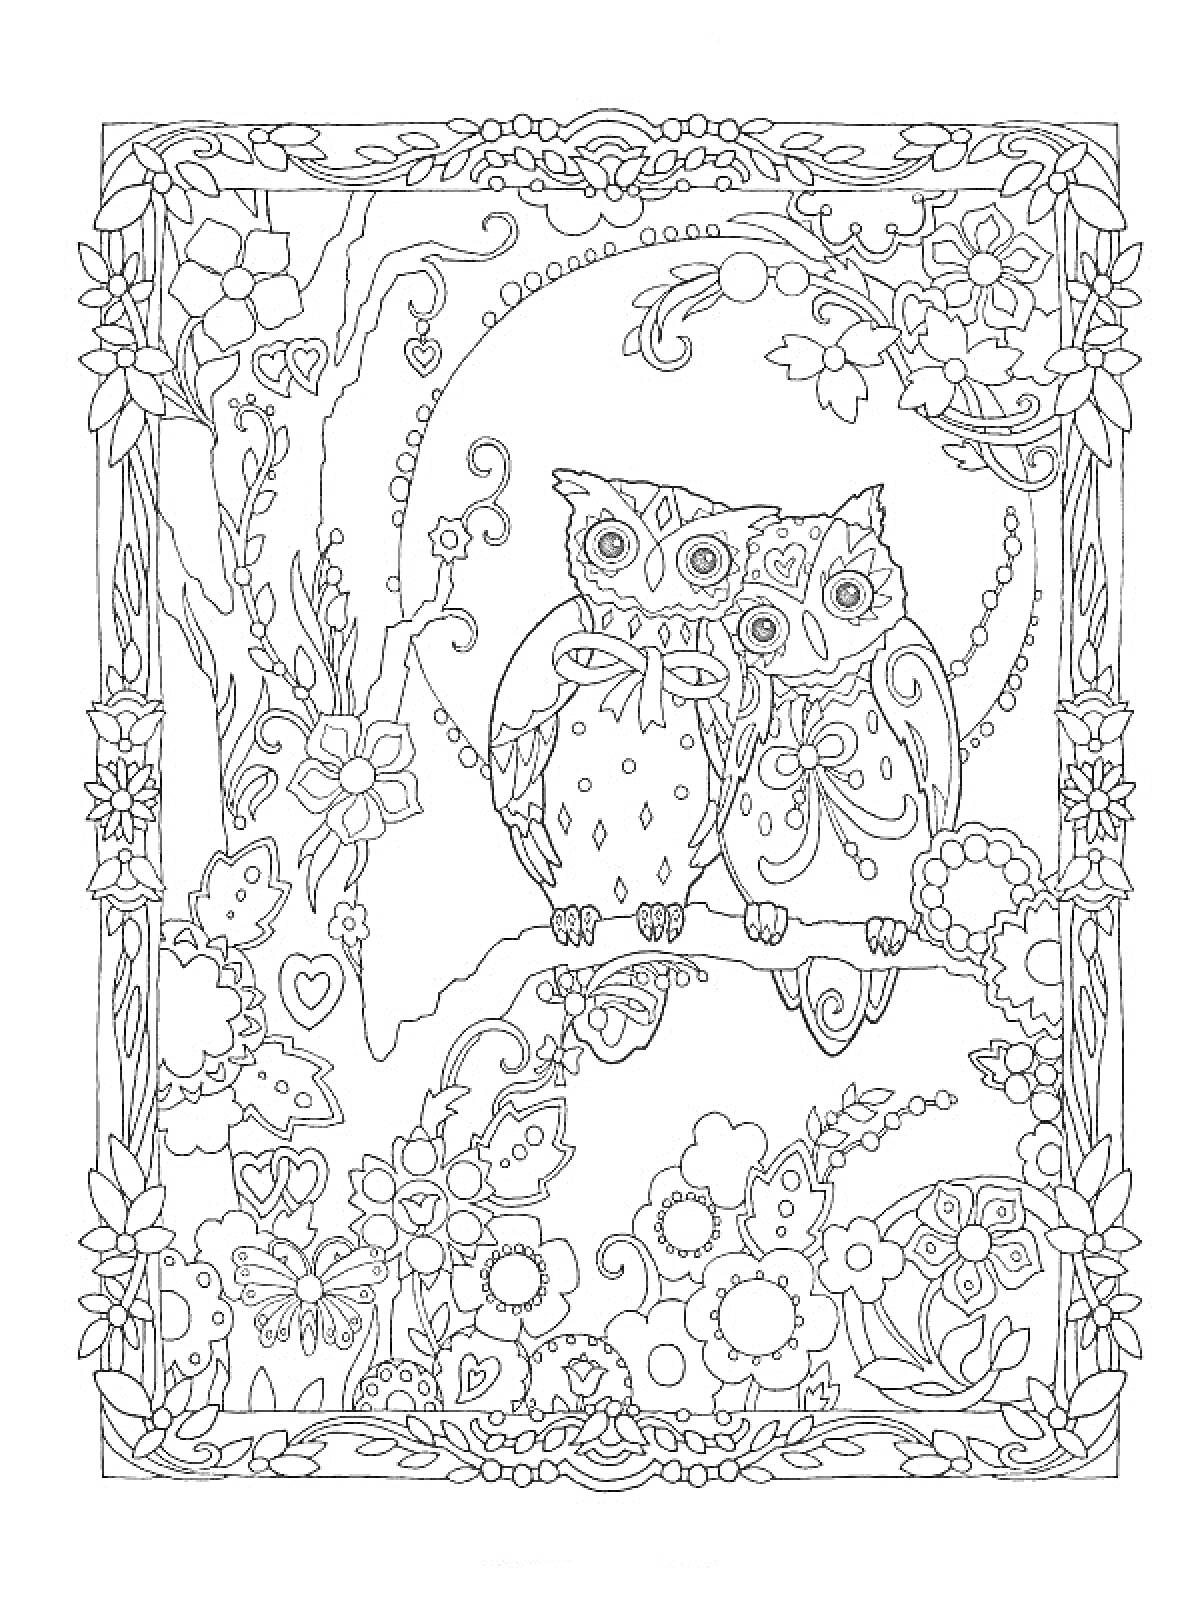 Раскраска Две совы на ветке среди цветов с деревьями и декоративными узорами по краям